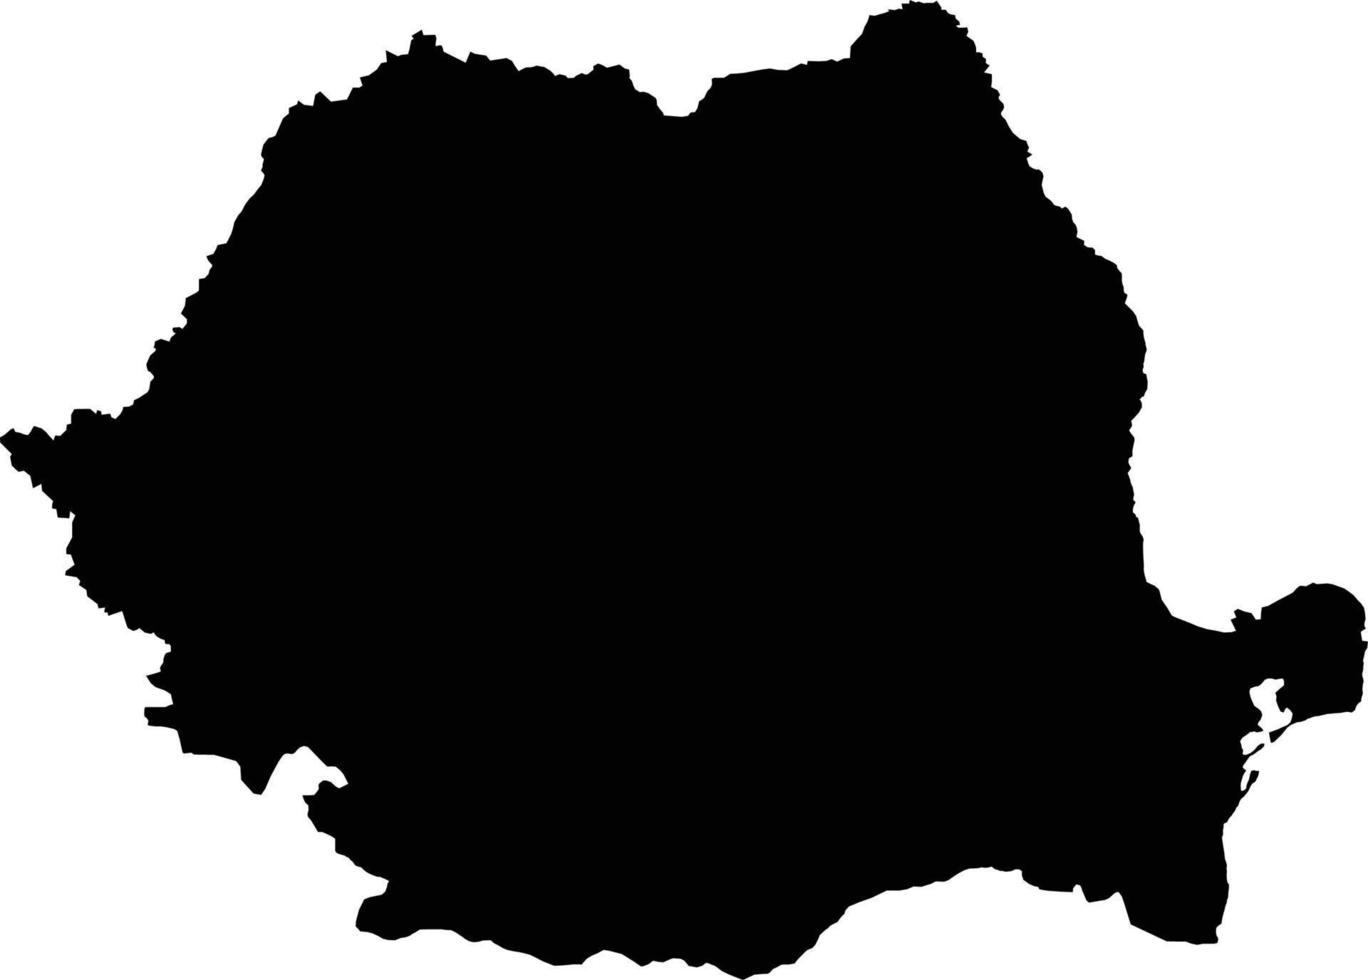 mapa de rumania mapa vectorial.estilo minimalista dibujado a mano. vector